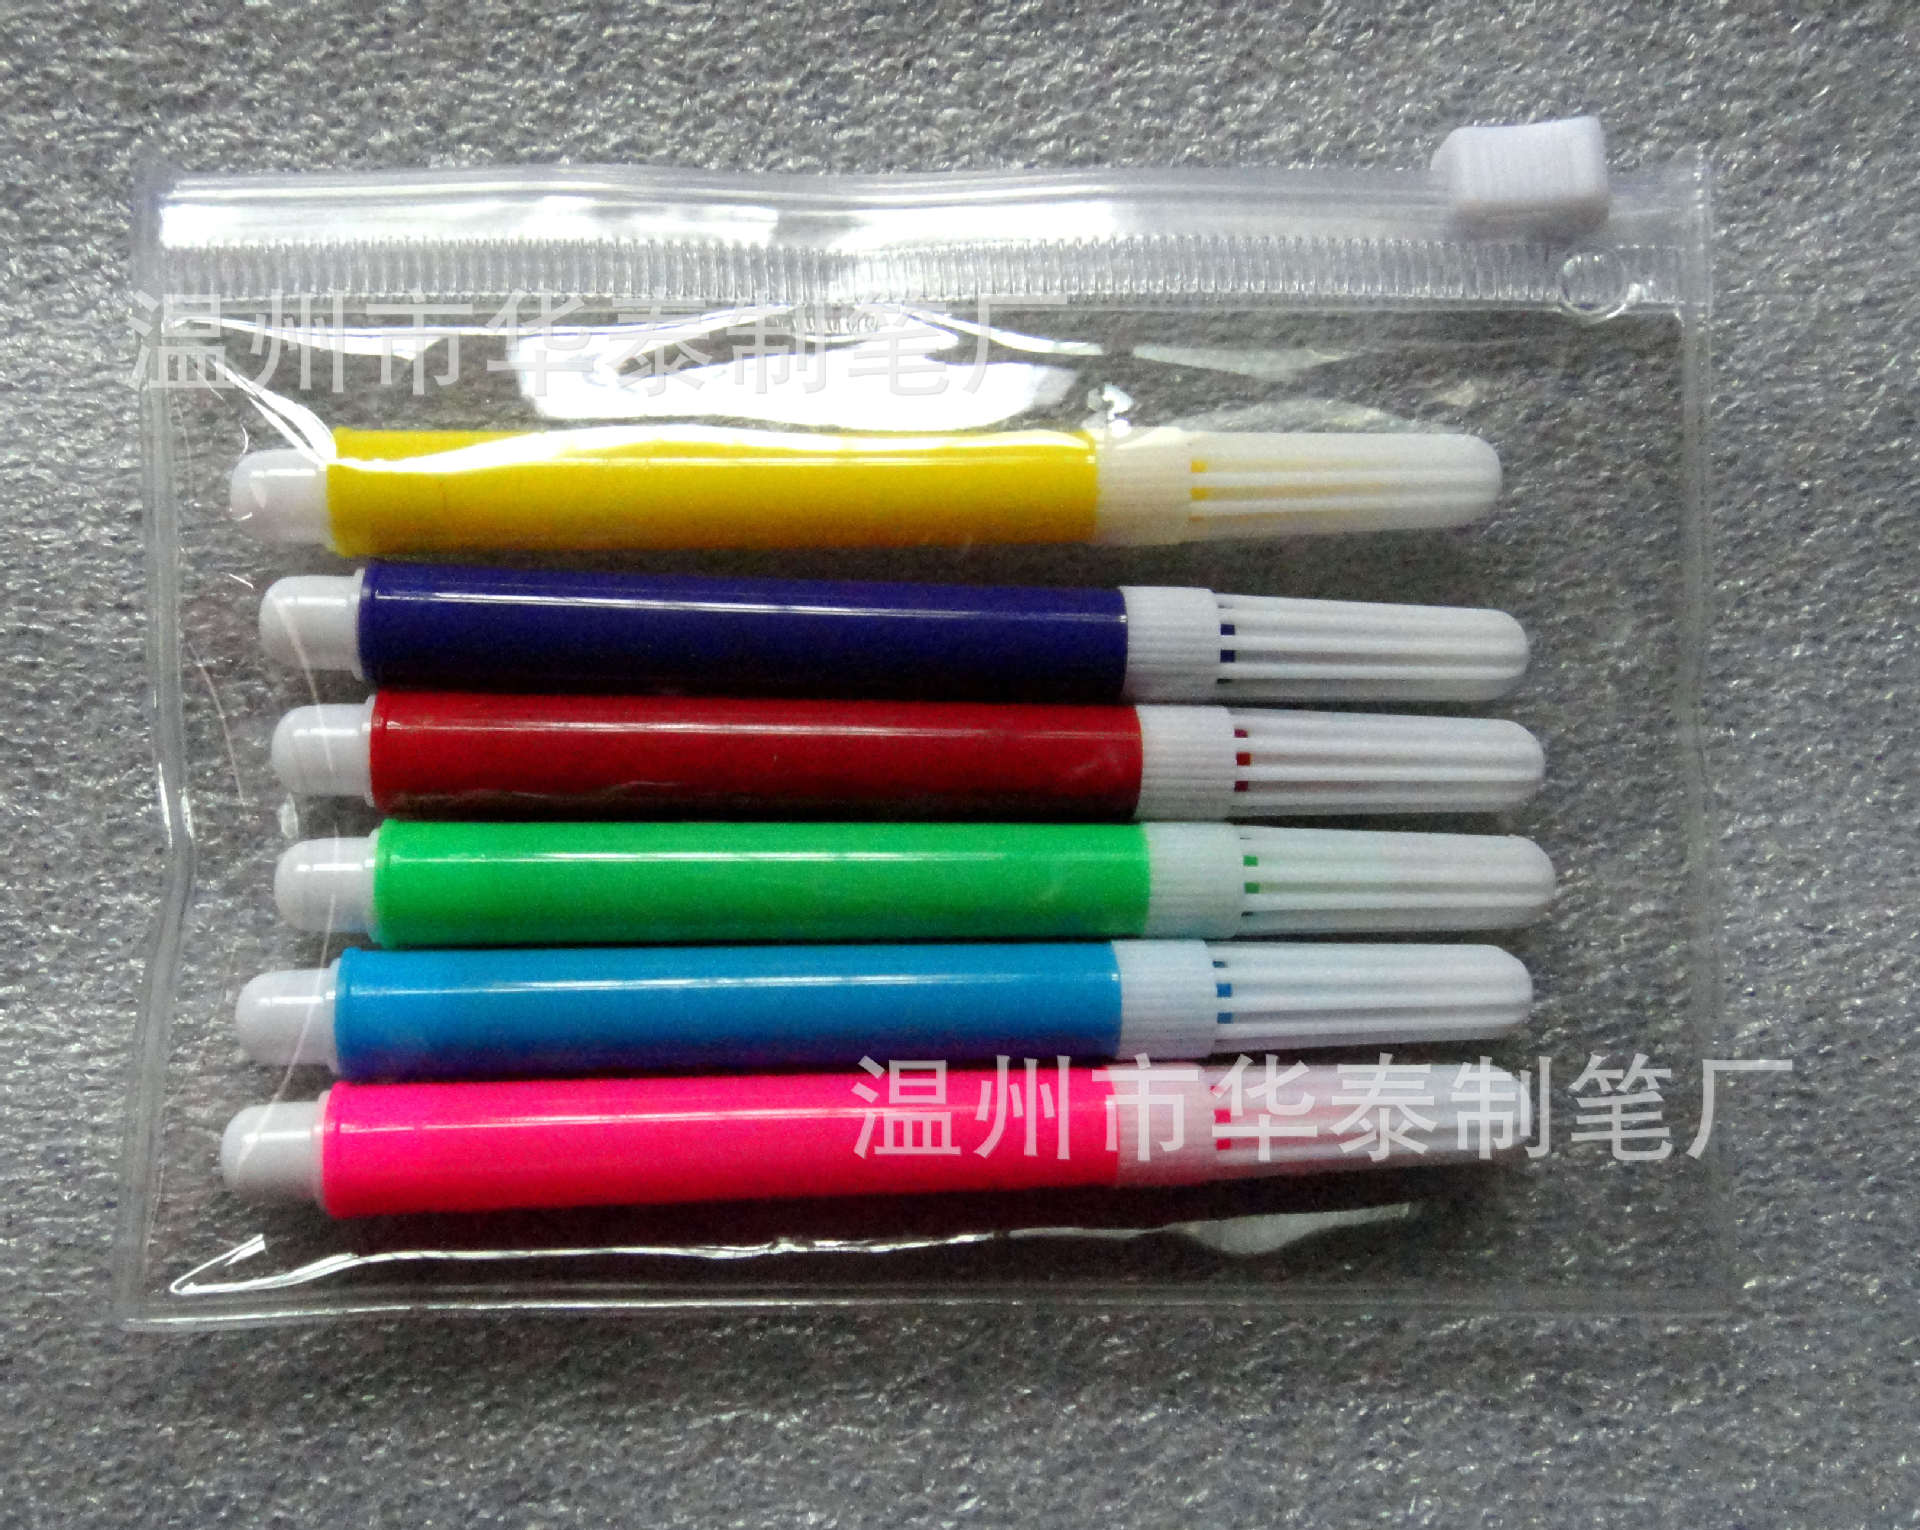 画笔-温州华泰制笔厂生产胖子水彩笔 环保水彩